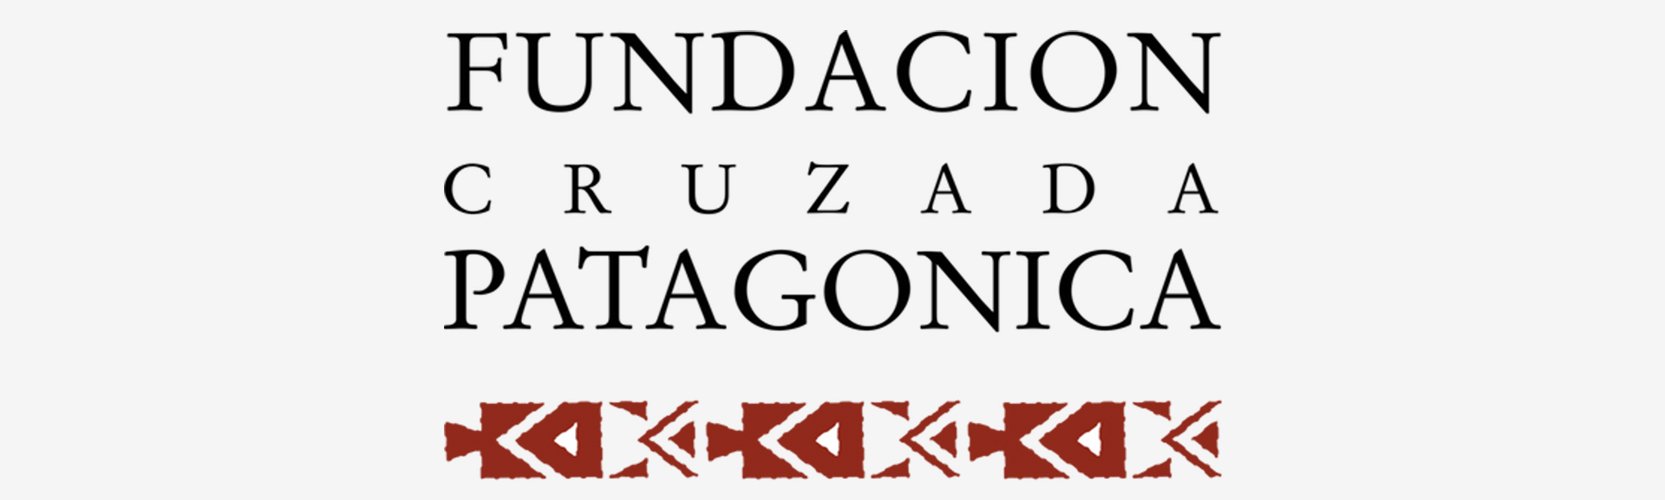 Funndación Cruzada Patagónica